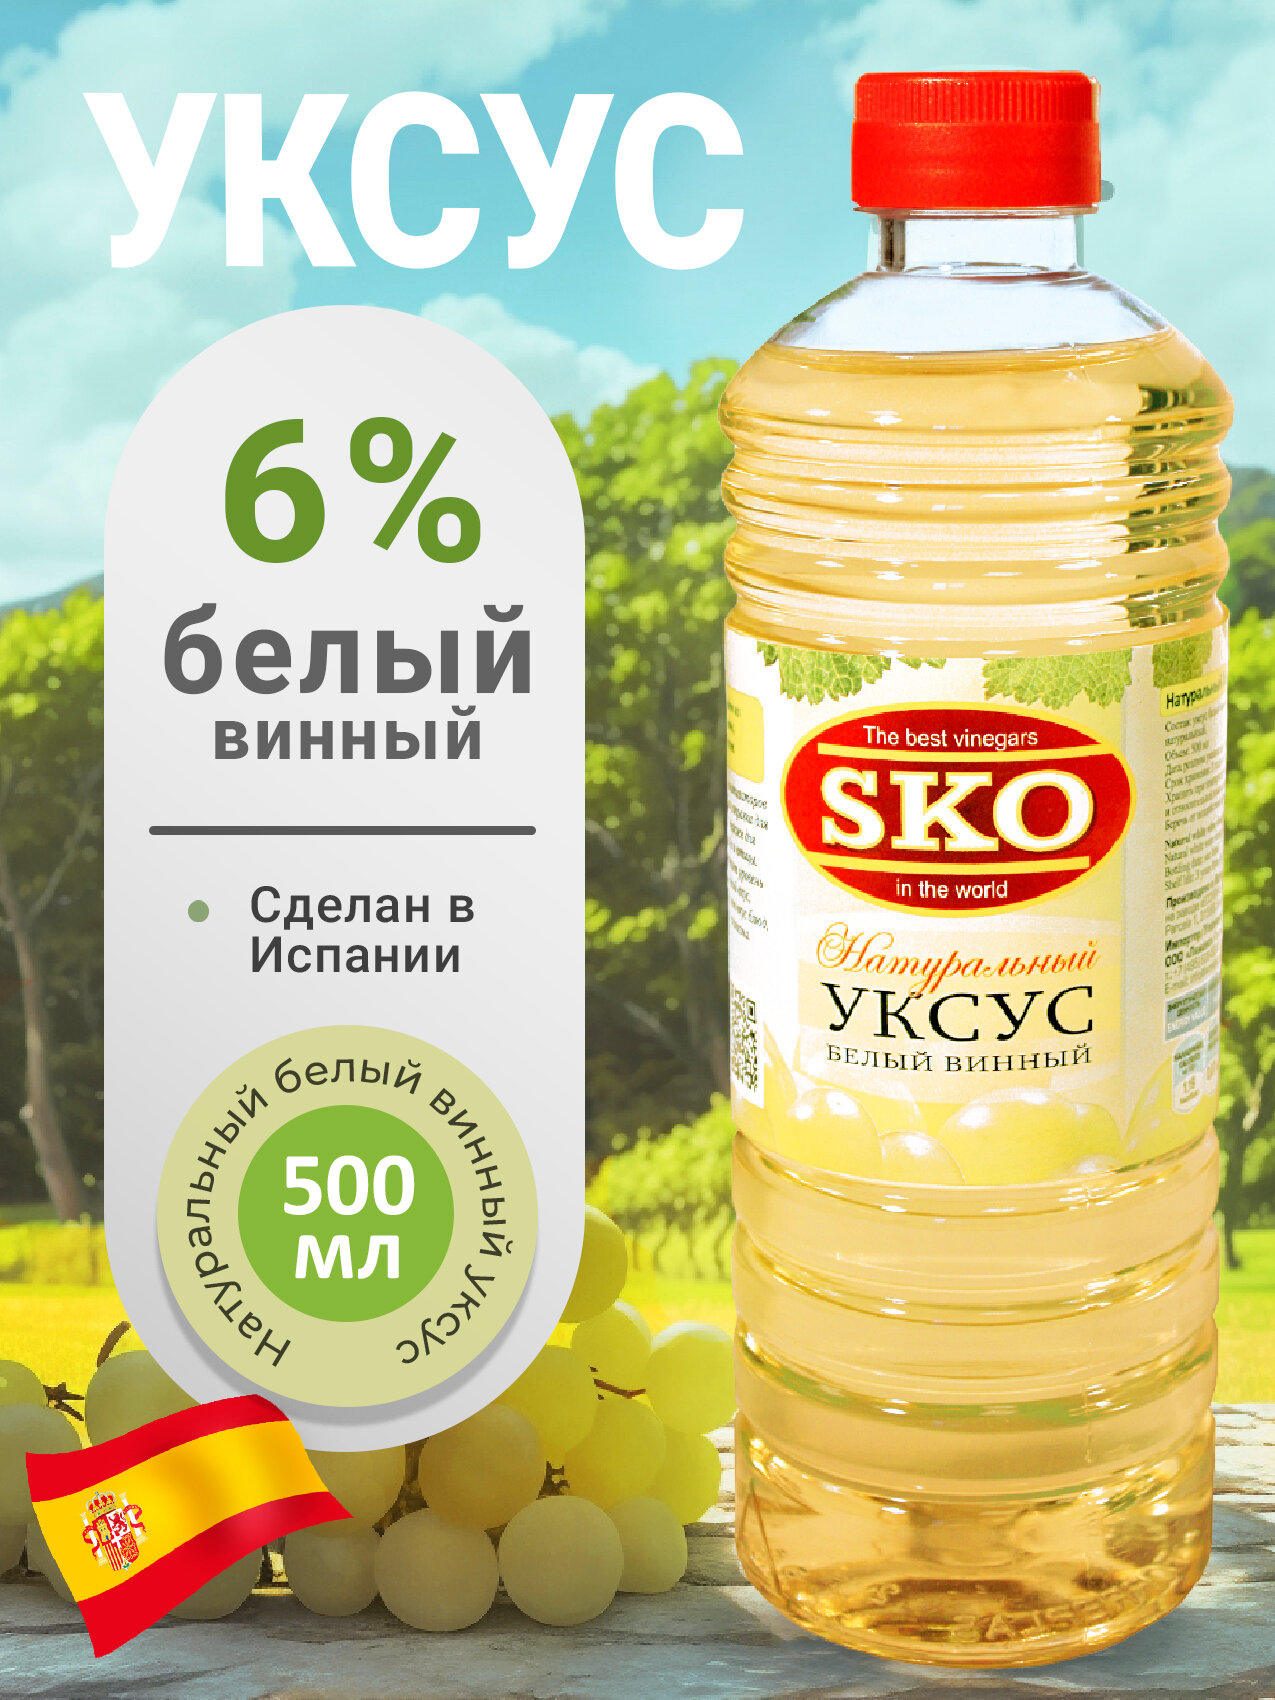 Уксус натуральный белый винный SKO 500мл, пэт/б Испания